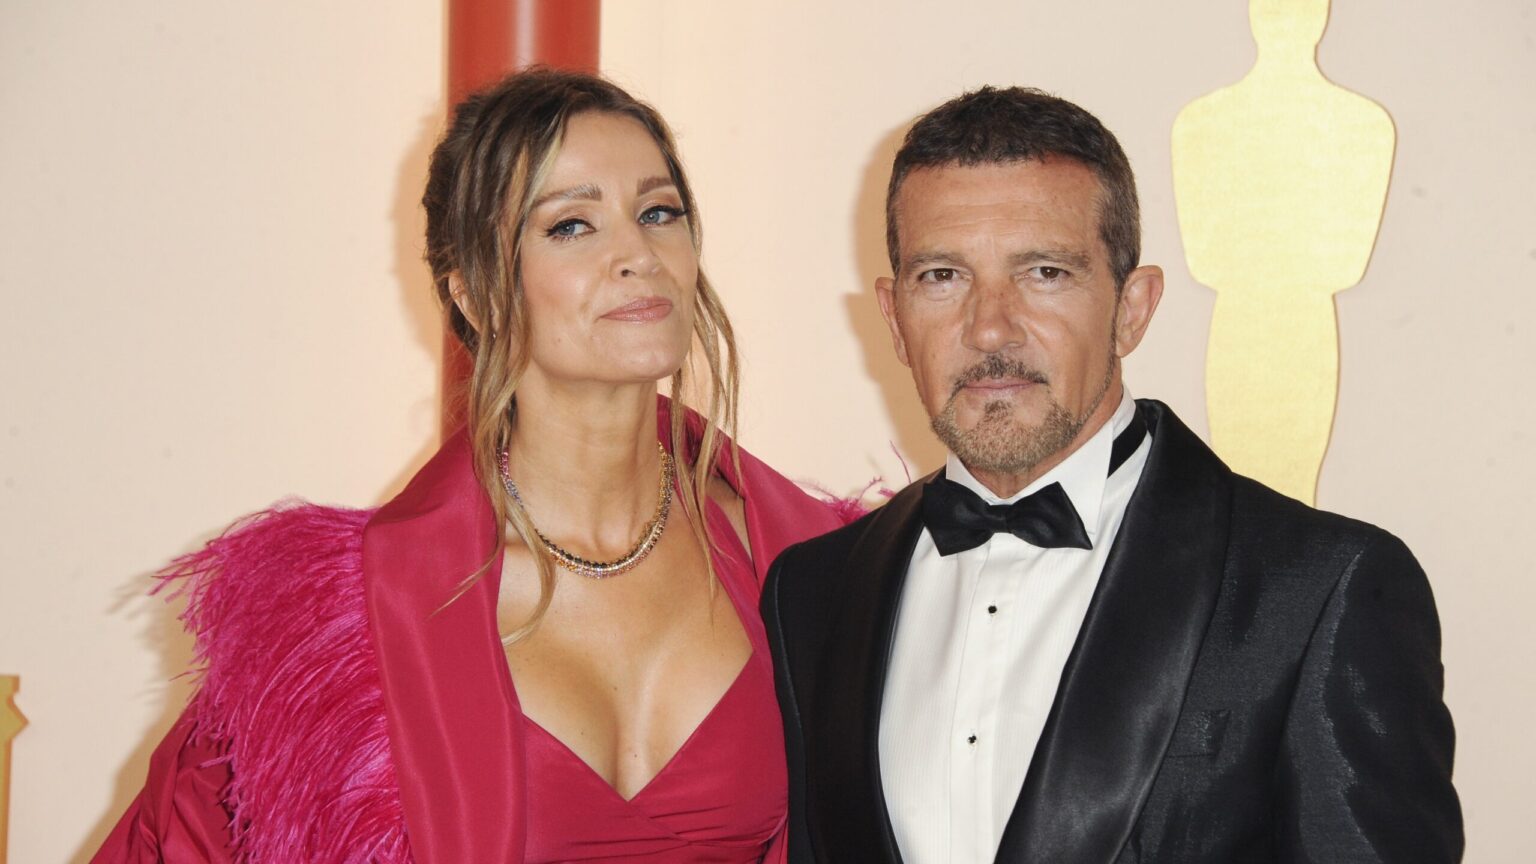 Los Premios Oscar: el momentazo ‘made in Spain’ de Antonio Banderas y Nicole Kimpel